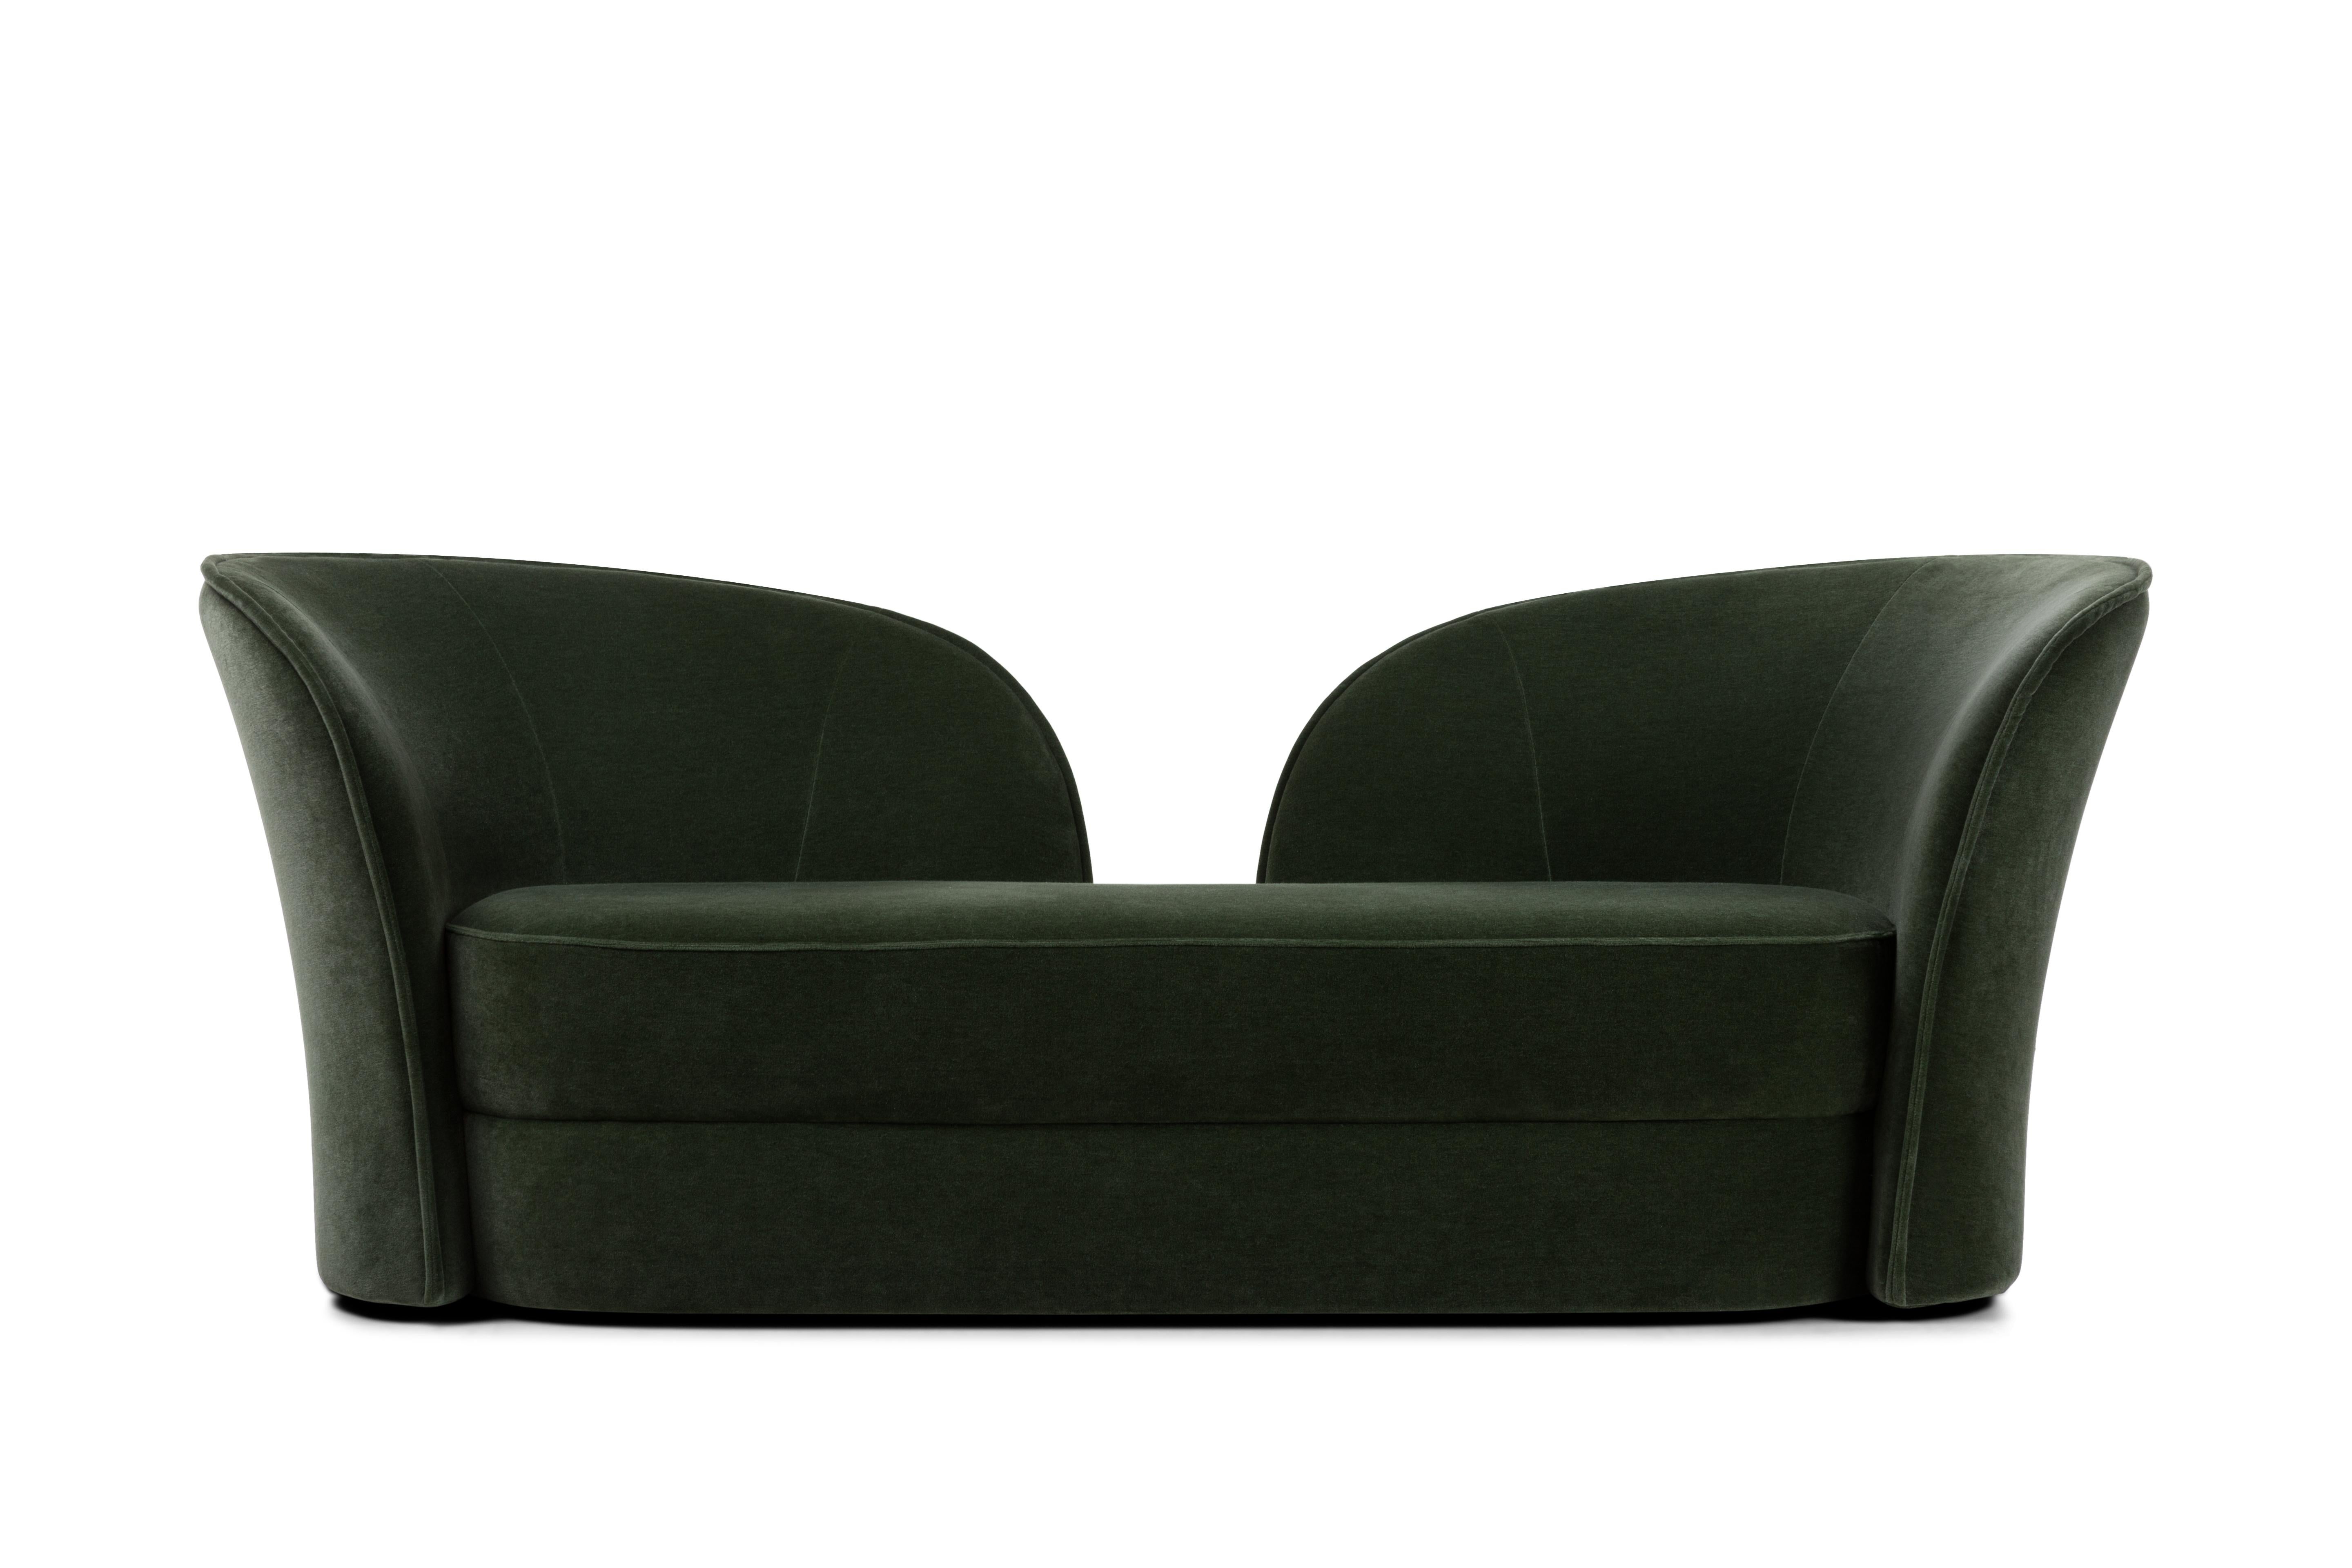 Das Sofa Aldora von Cristina Celestino ist eine moderne Variante eines klassischen Konzepts. Dieser kultige Sessel hebt sich durch seine skulpturale Rückenlehne von der Masse ab, die zu stundenlangen Gesprächen zu zweit einlädt. Die weichen,